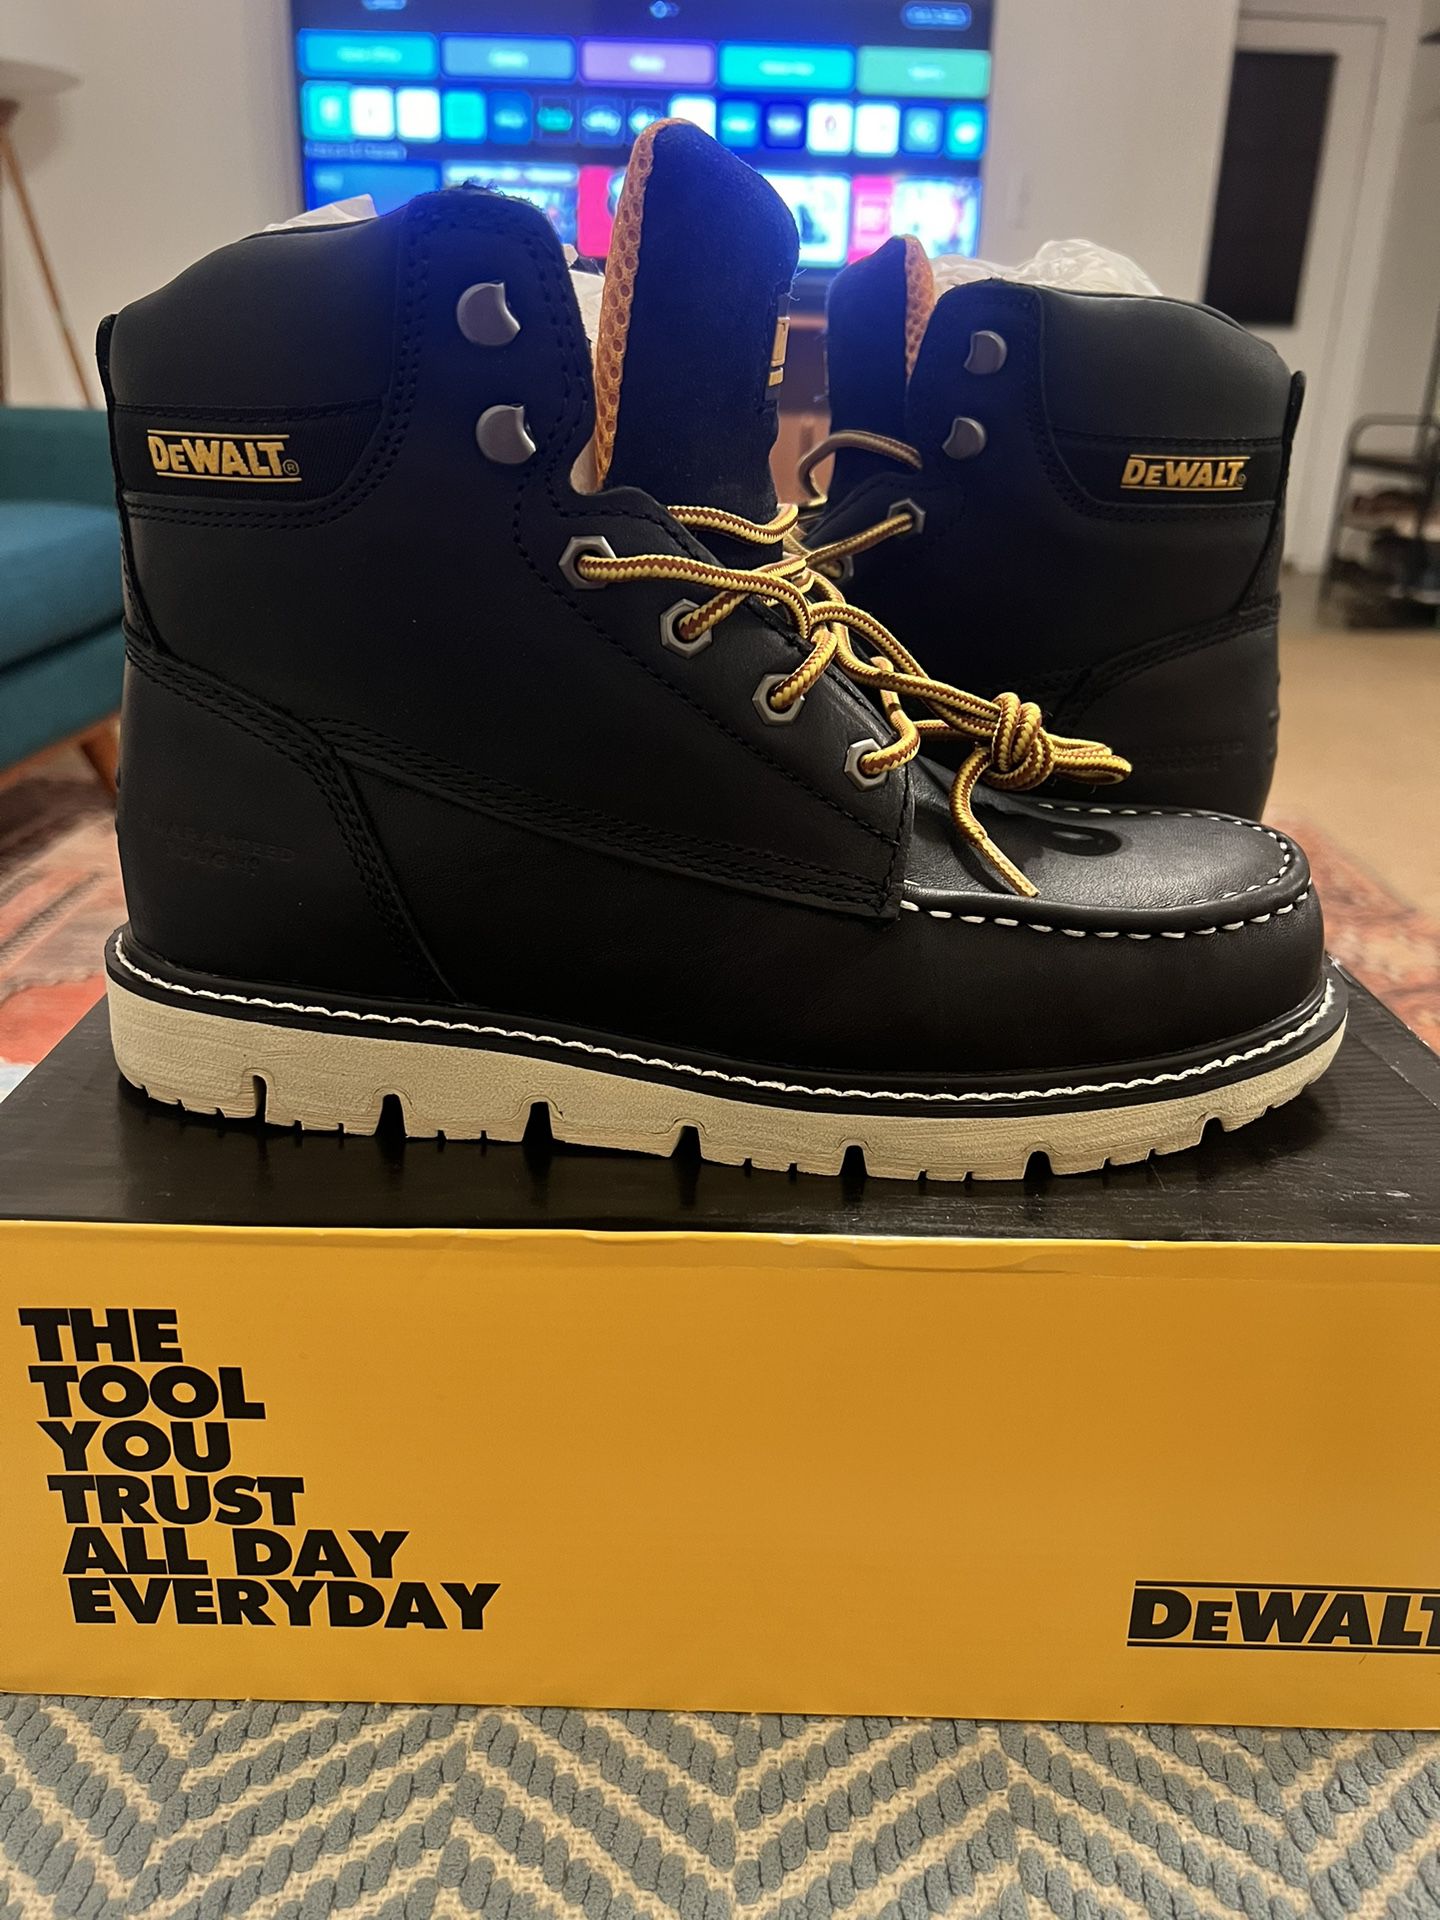 Dewalt Work boots 9.5